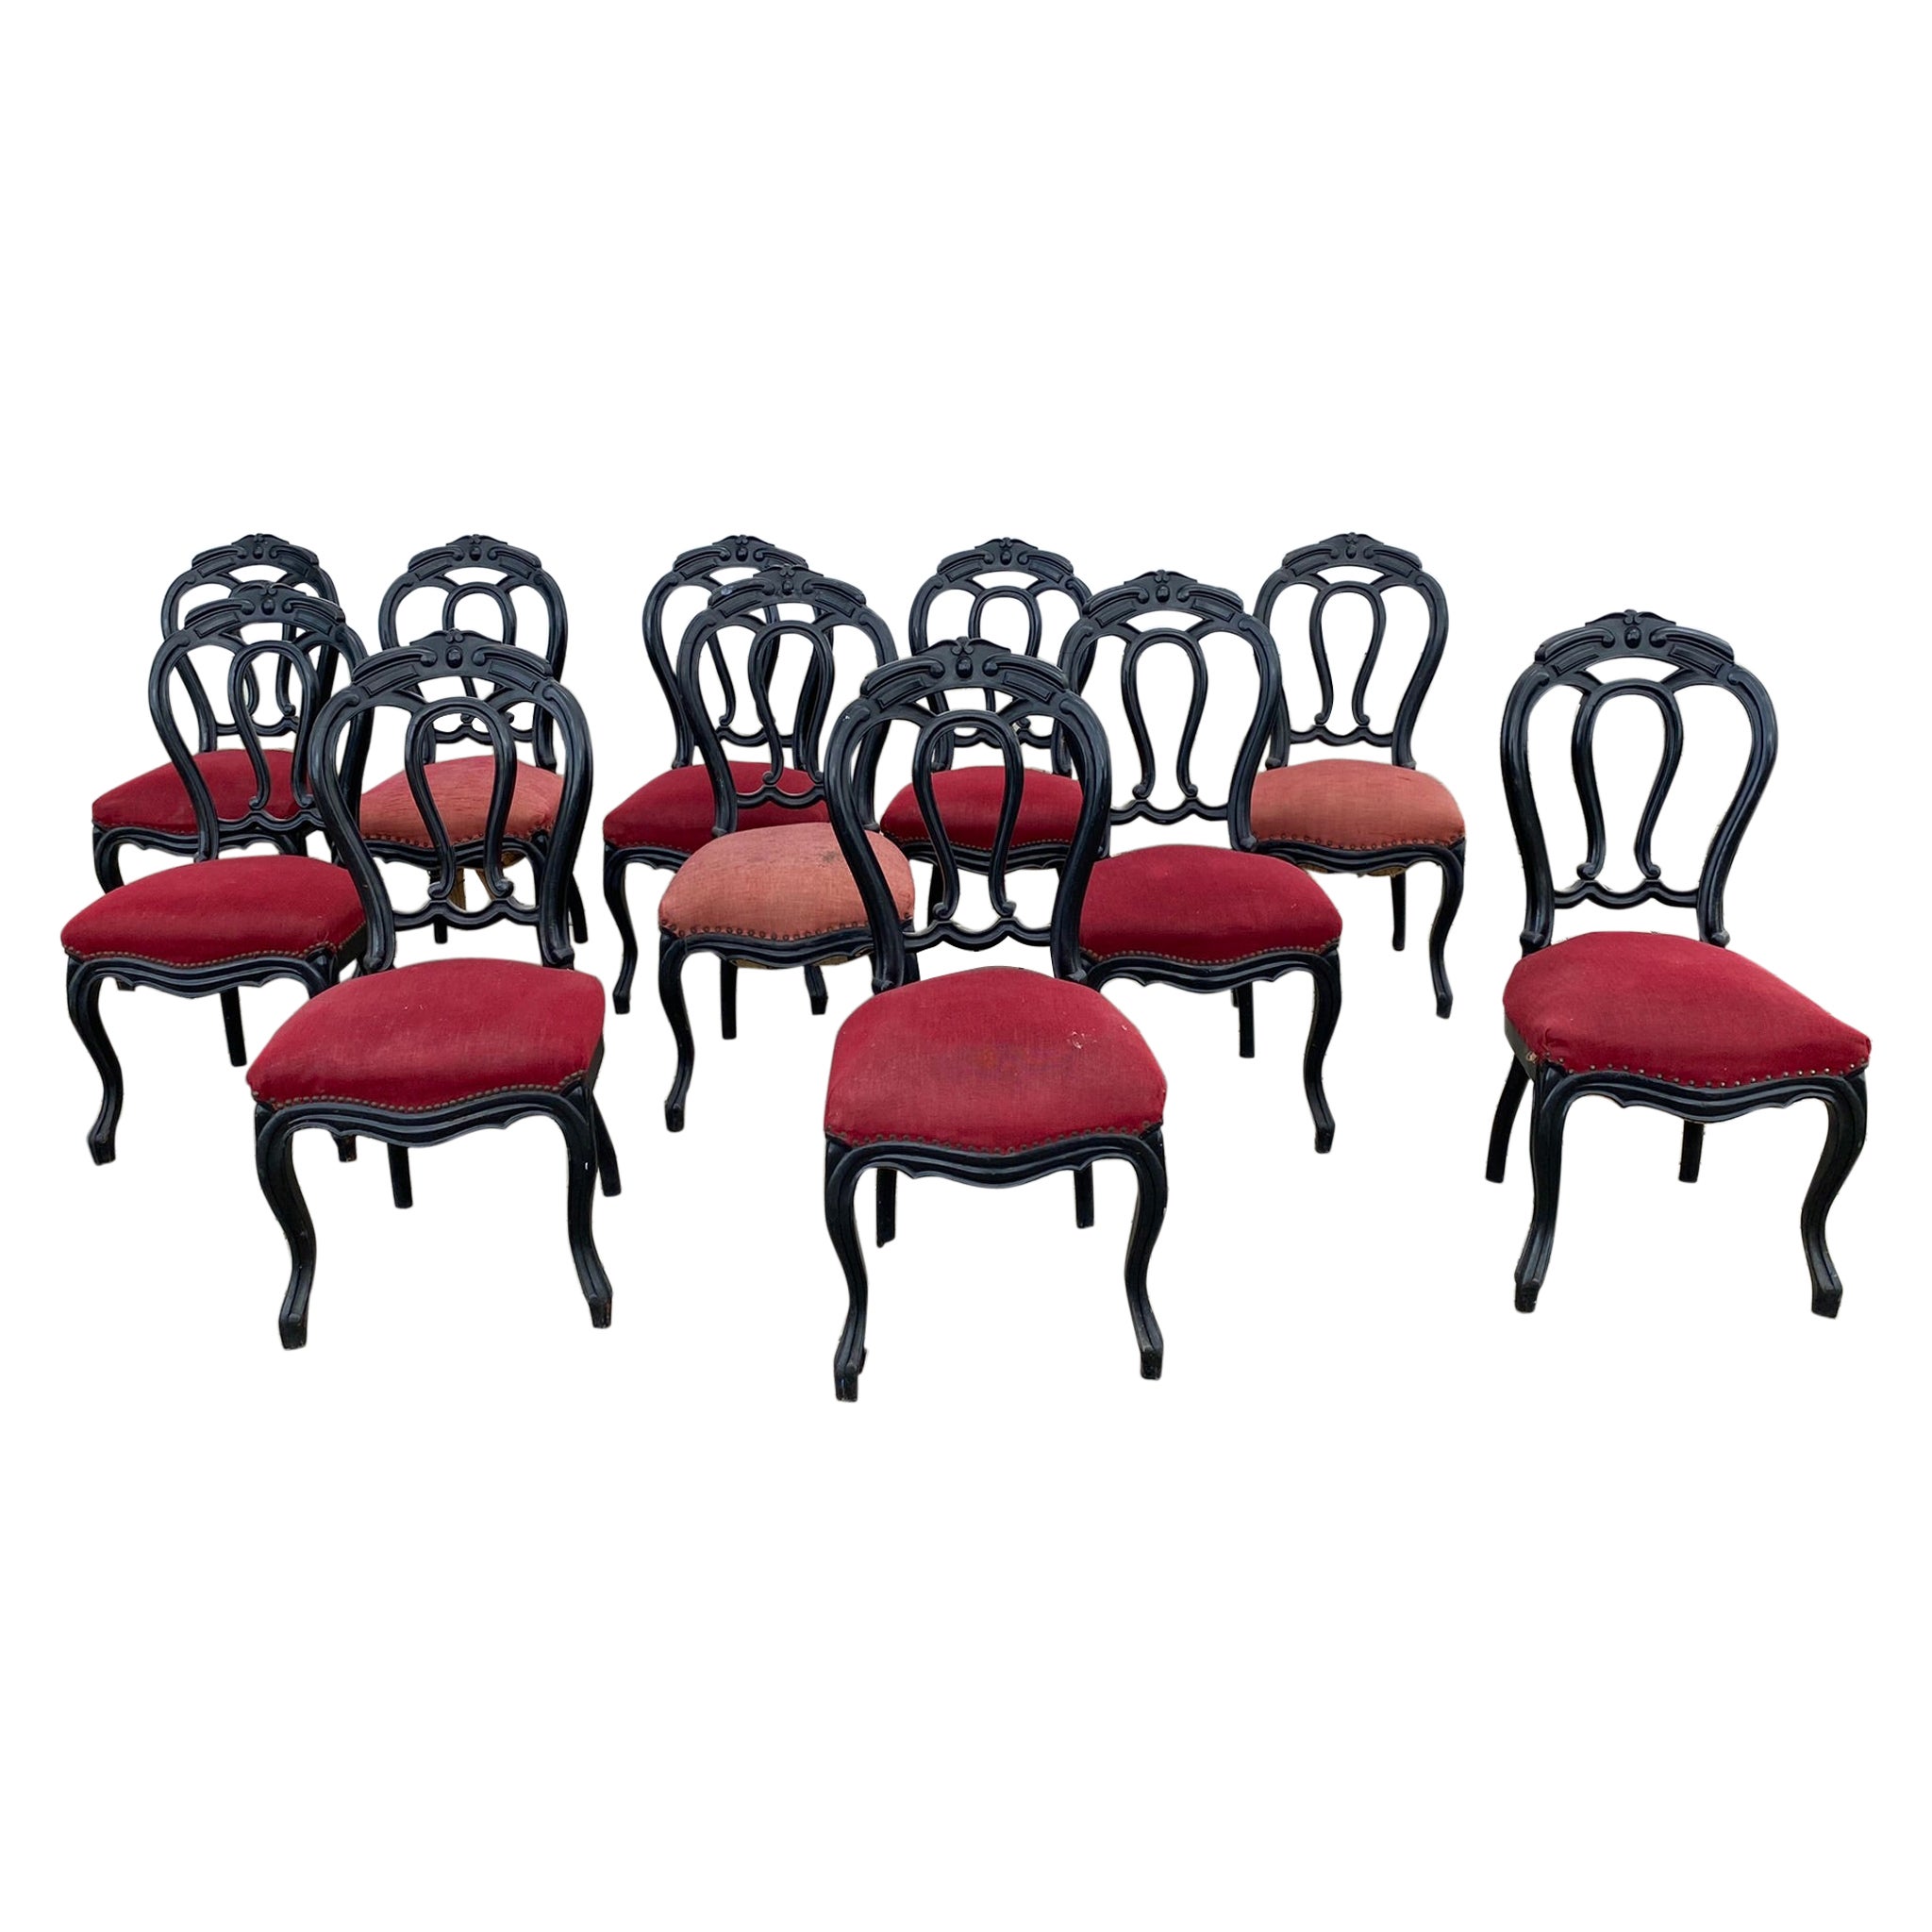 Seltene Suite von 9 Stühlen aus der Zeit Napoleons III. aus geschwärzter Buche